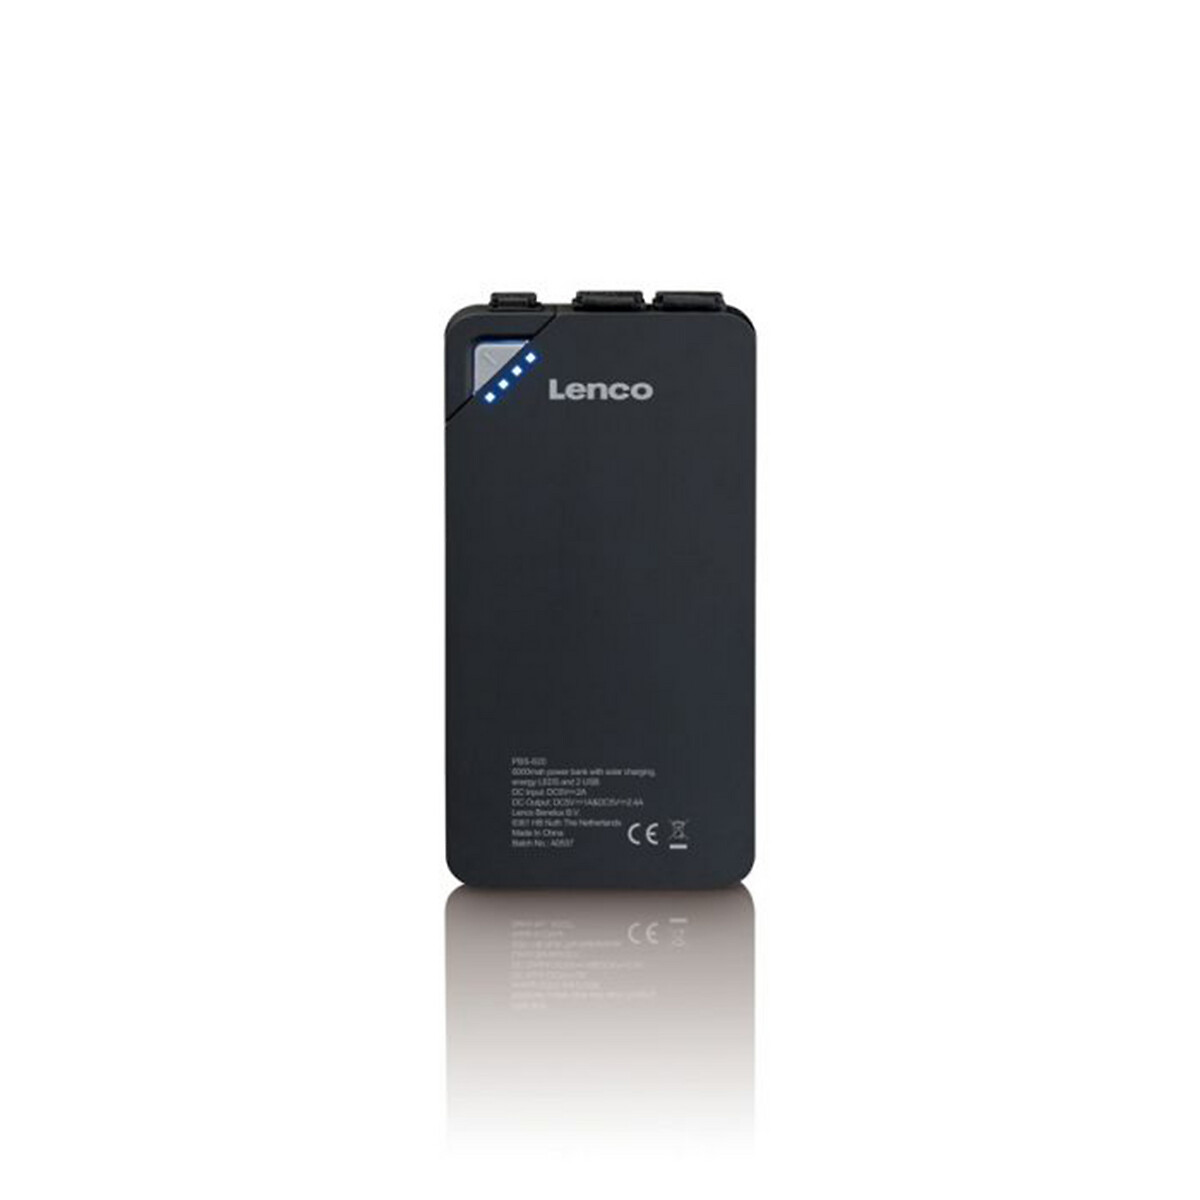 Lenco Powerbank 6000mAh com carregador solar, da Lenco